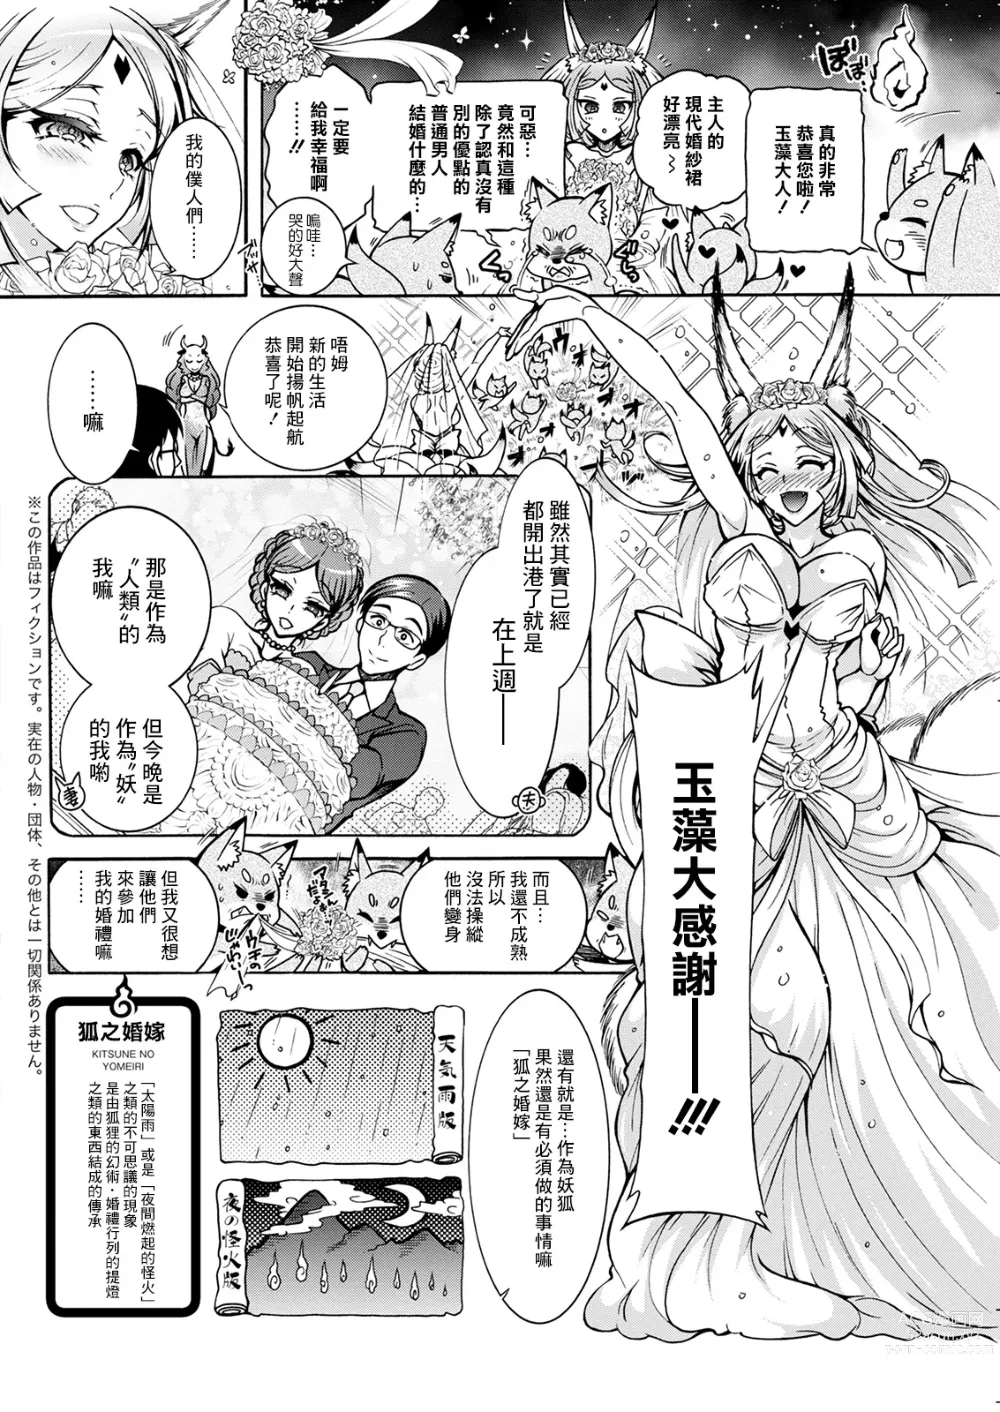 Page 6 of manga Youkai Ecchicchi Saishuuwa